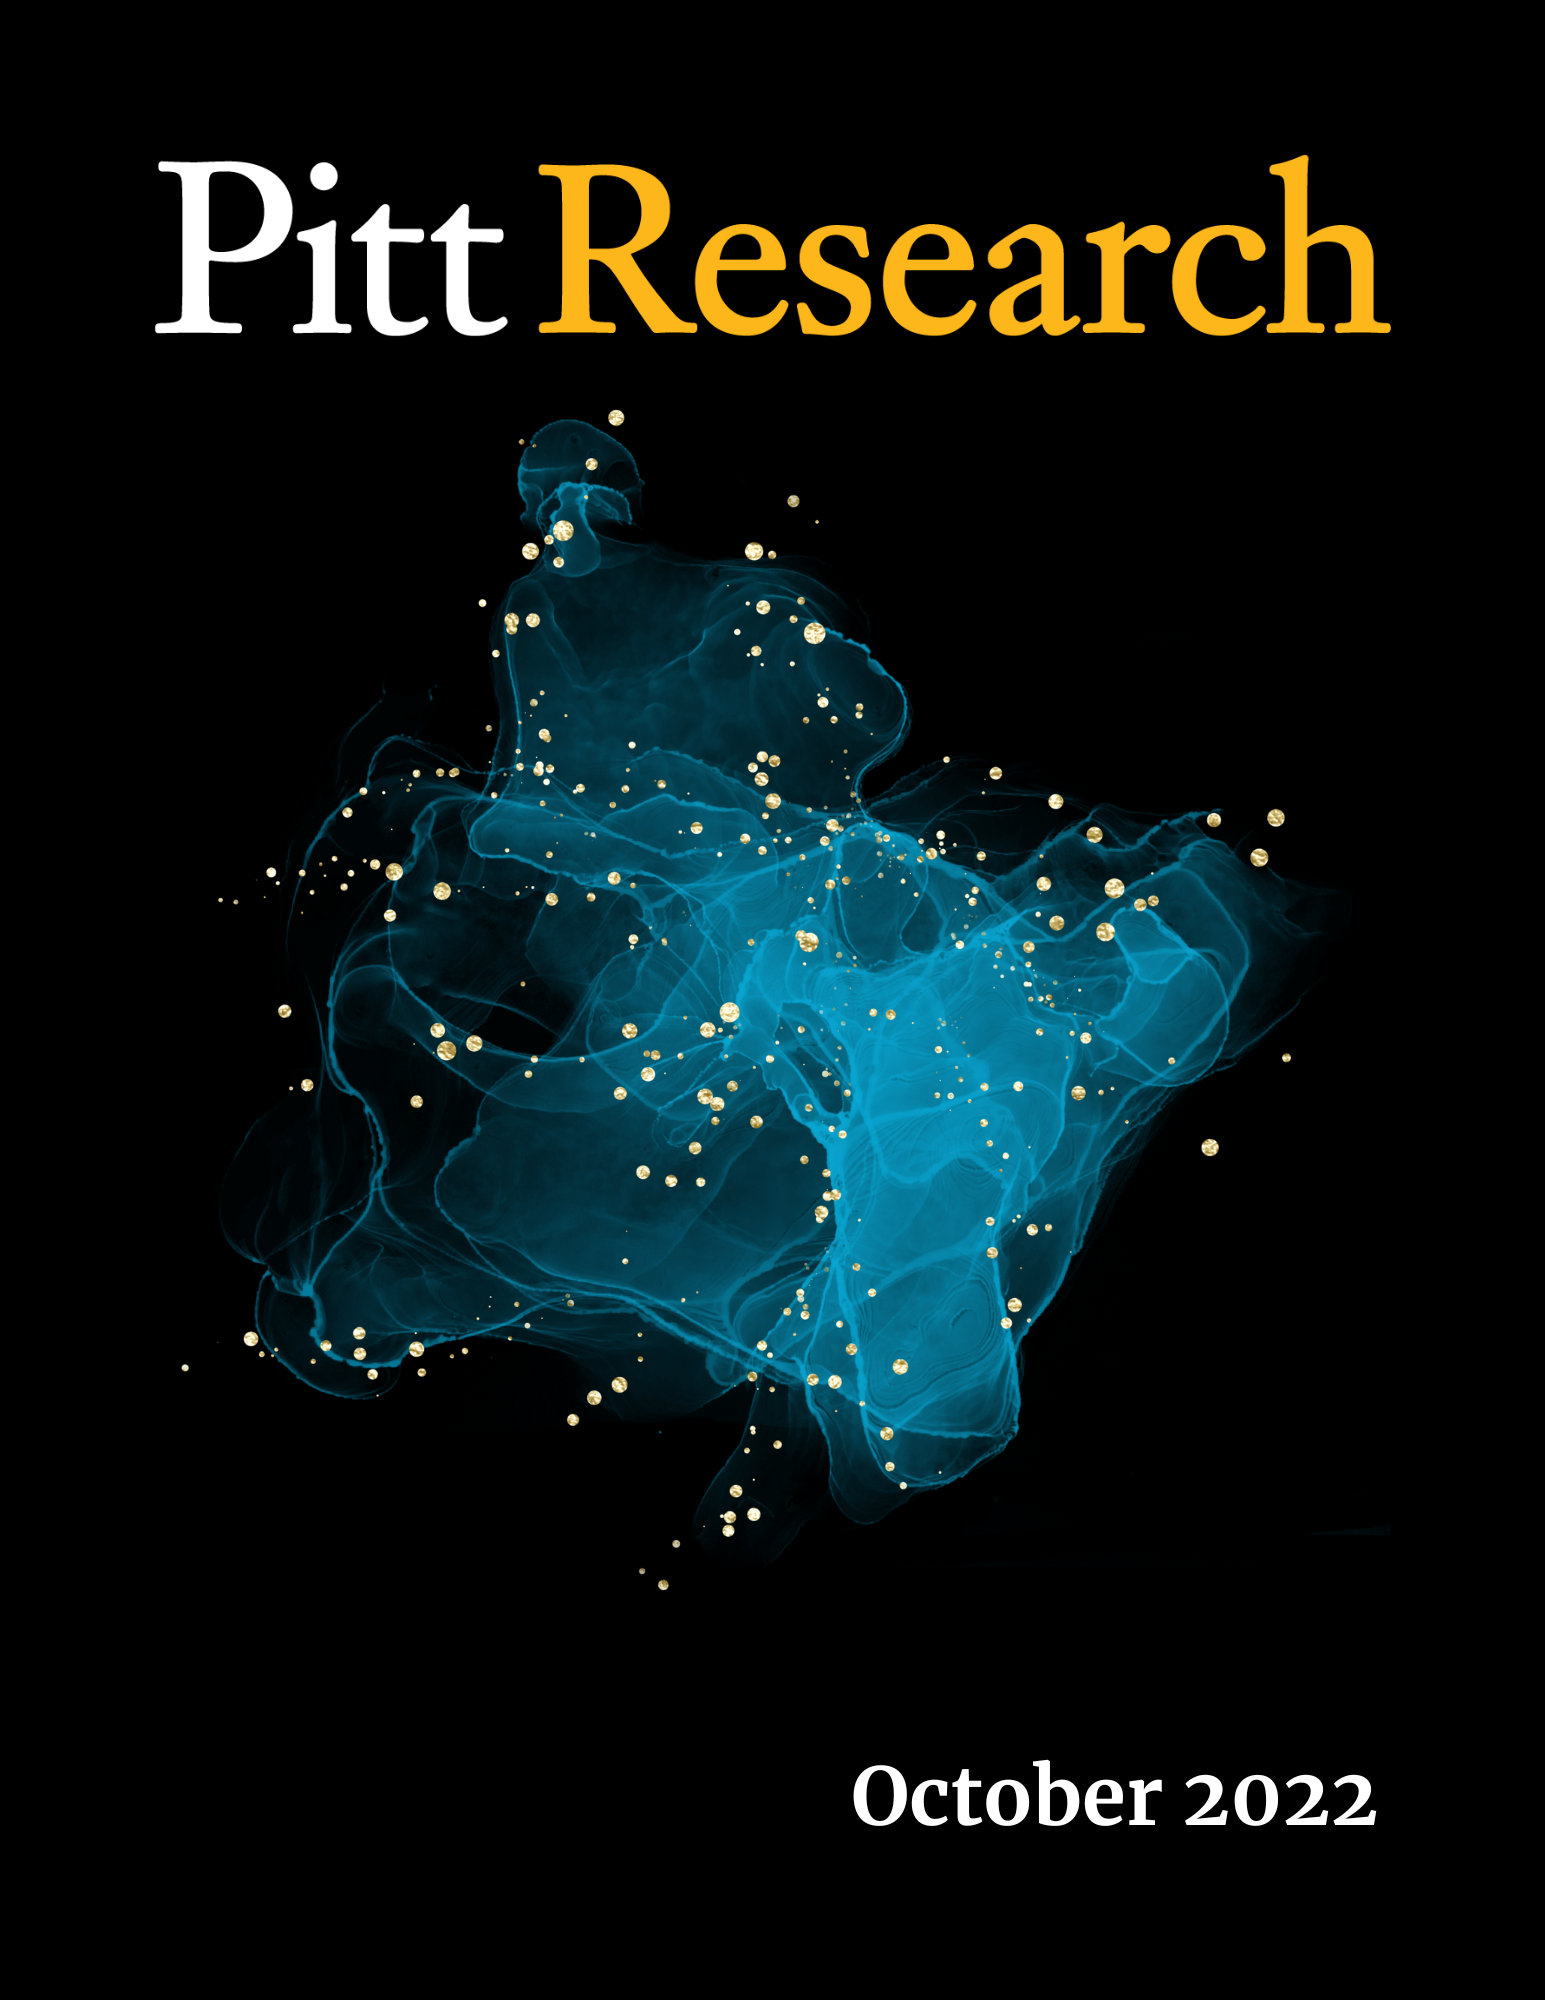 Pitt Research Newsletter for October 2022